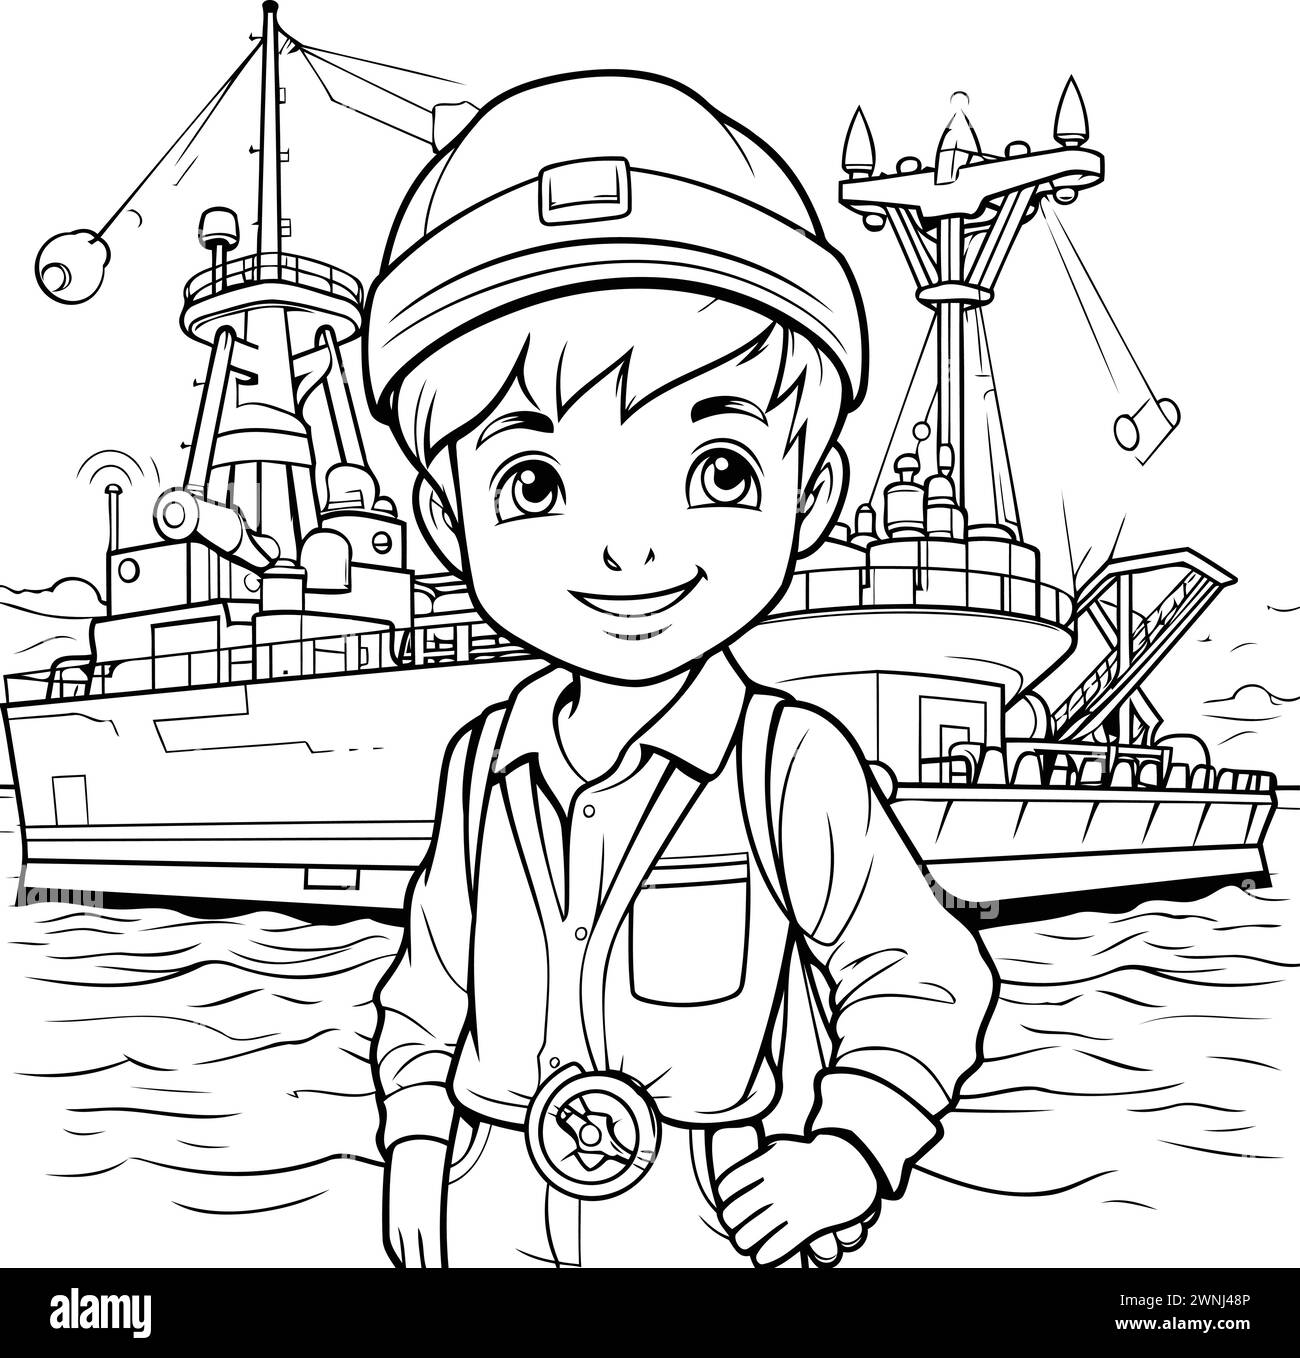 Schwarz-weiß-Zeichentrickillustration des Kid Boy Captain oder Sailor Charakters mit Seefrachtschiff auf Hintergrund Malbuch Stock Vektor